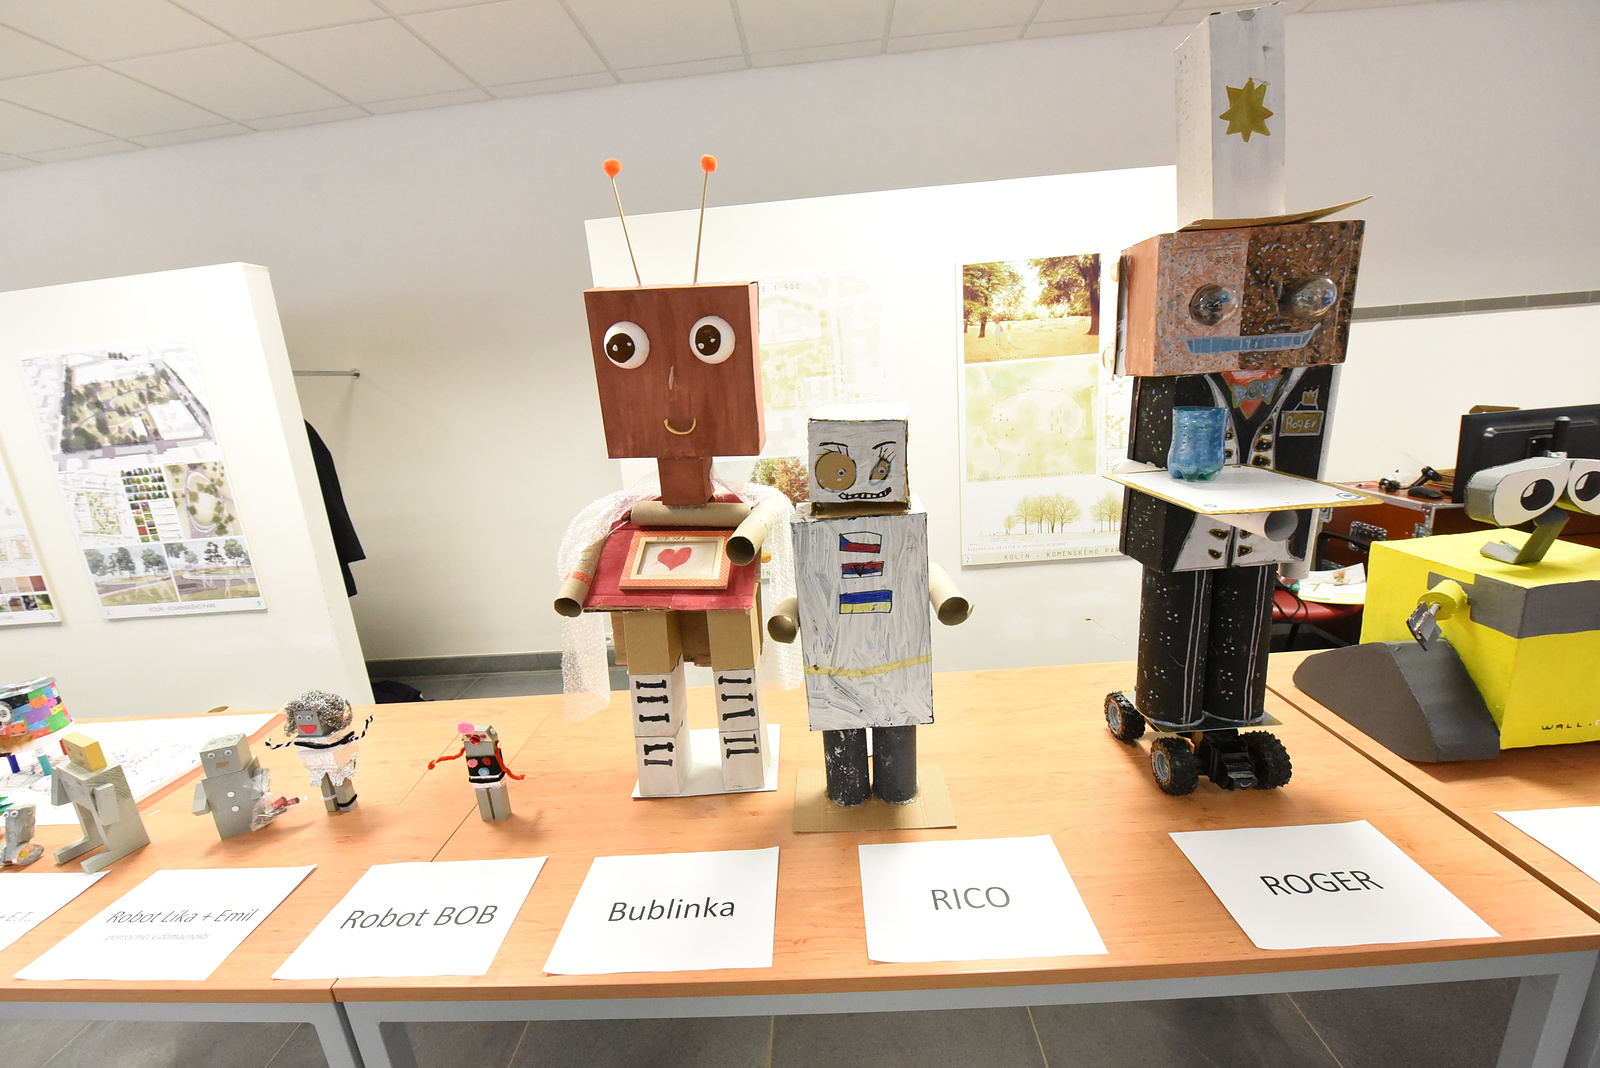 OBRAZEM: Vědecká konference v Kolíně. Cerop zaplnili roboti, děti a mládež  - Kolínský deník